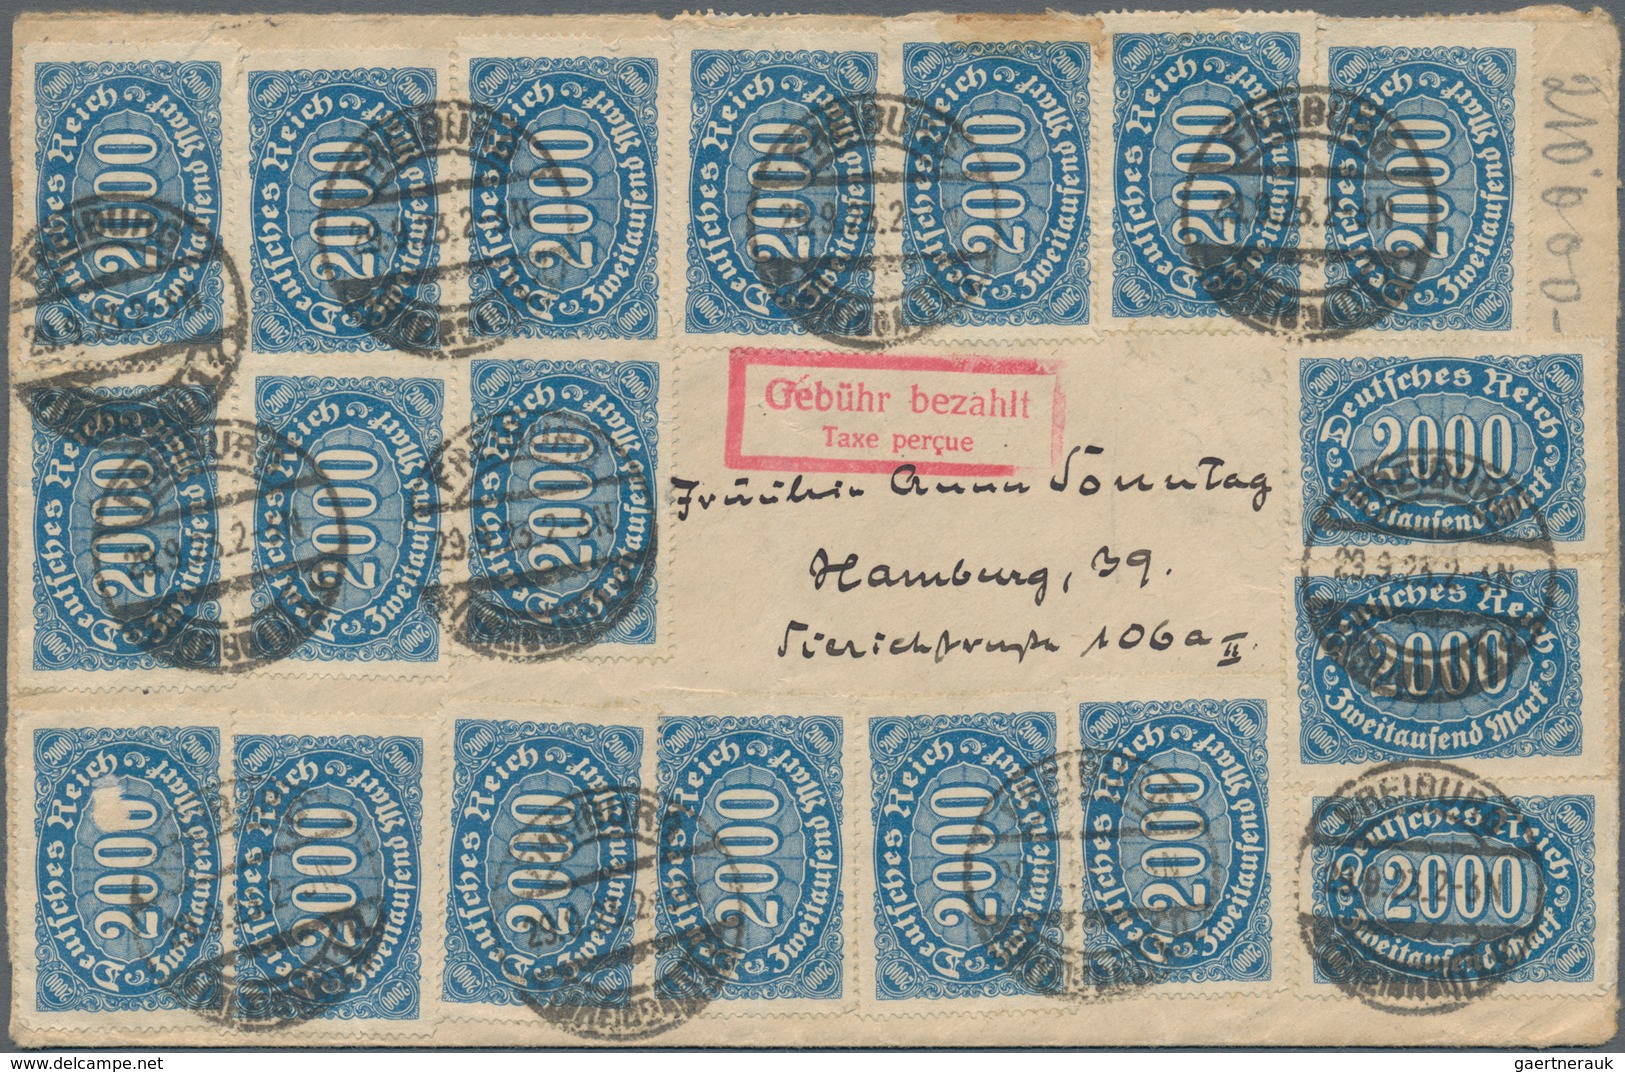 Deutsches Reich - Inflation: 1923, GEBÜHR BEZAHLT: reichhaltiger Sammlungsbestand mit ca.130 Belegen